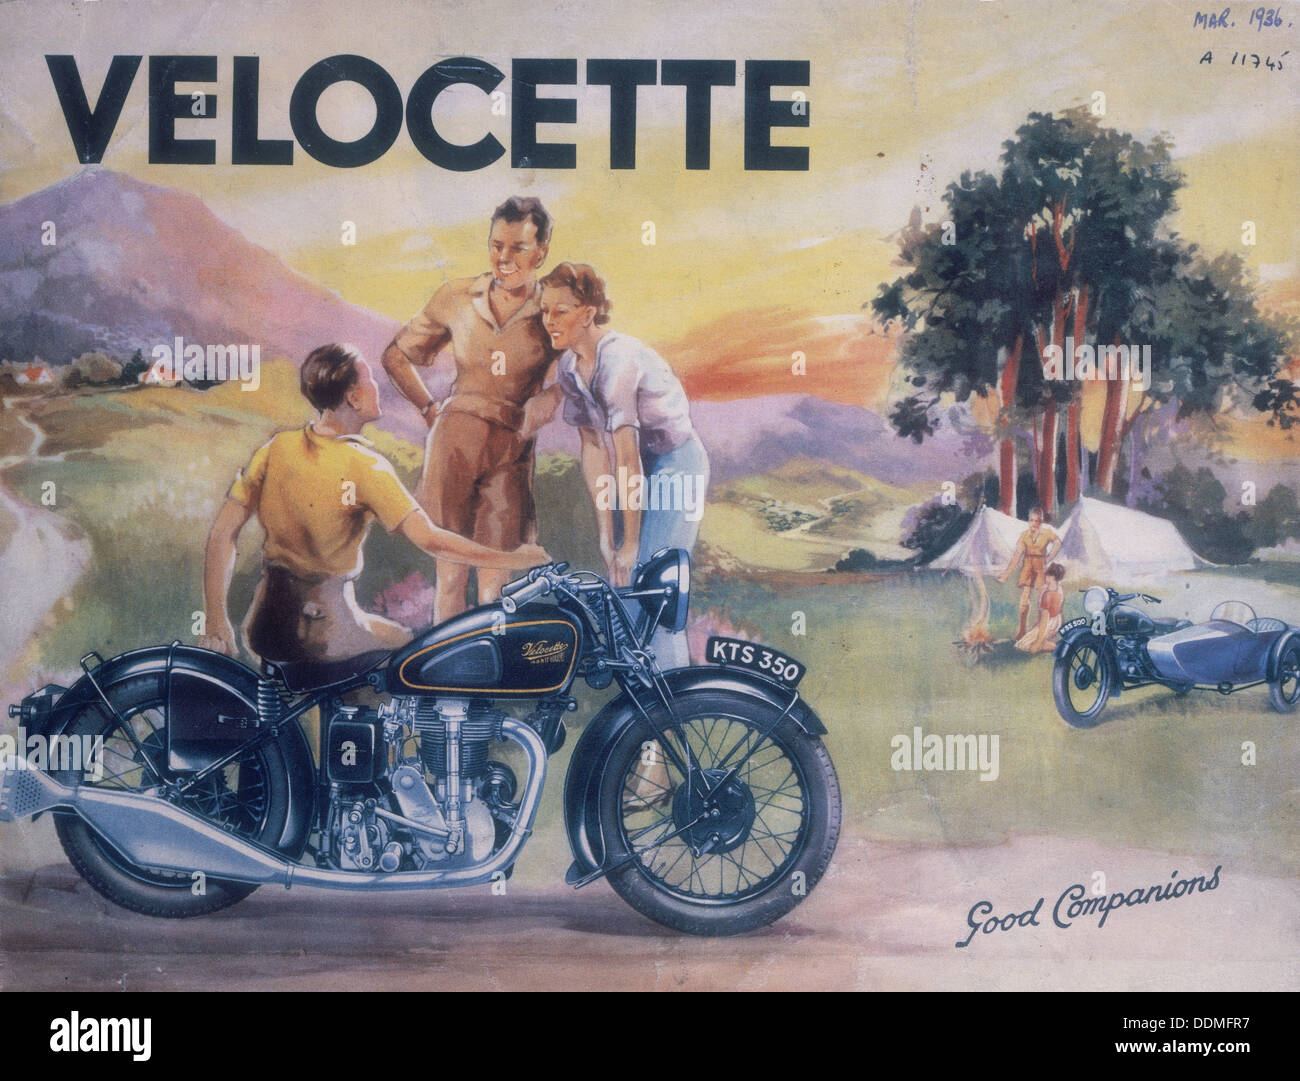 Affiche publicitaire de Velocette motos, 1936. Artiste : Inconnu Banque D'Images